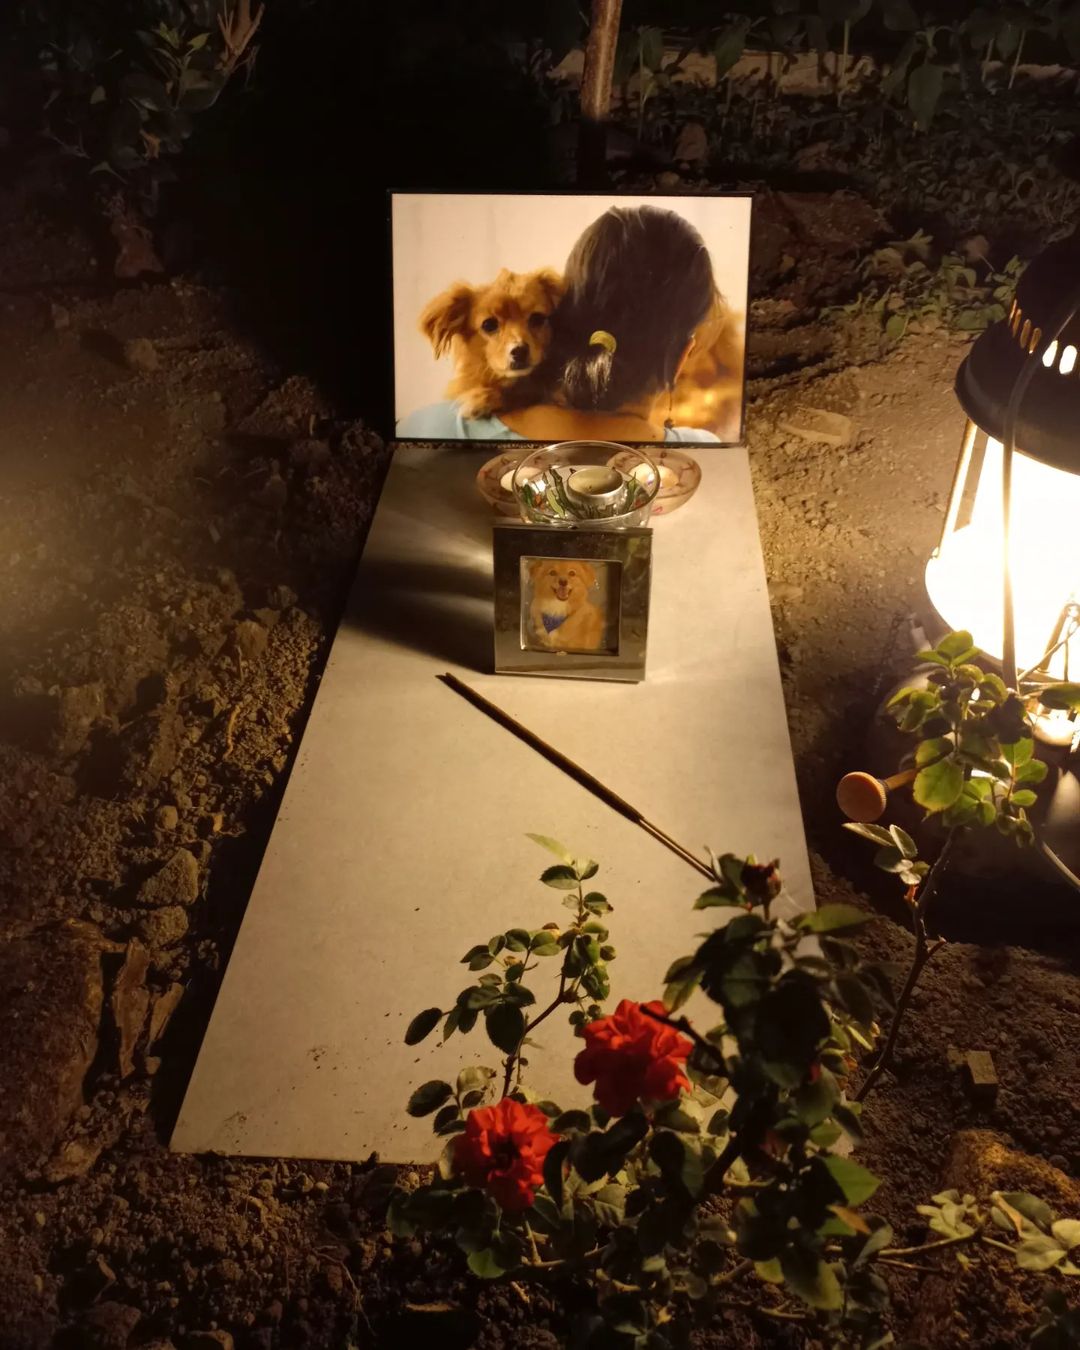 سوسن پرور تصاویر زیر را از درگذشت حیوان خانگی خود در اینستاگرام منتشر کرده است.